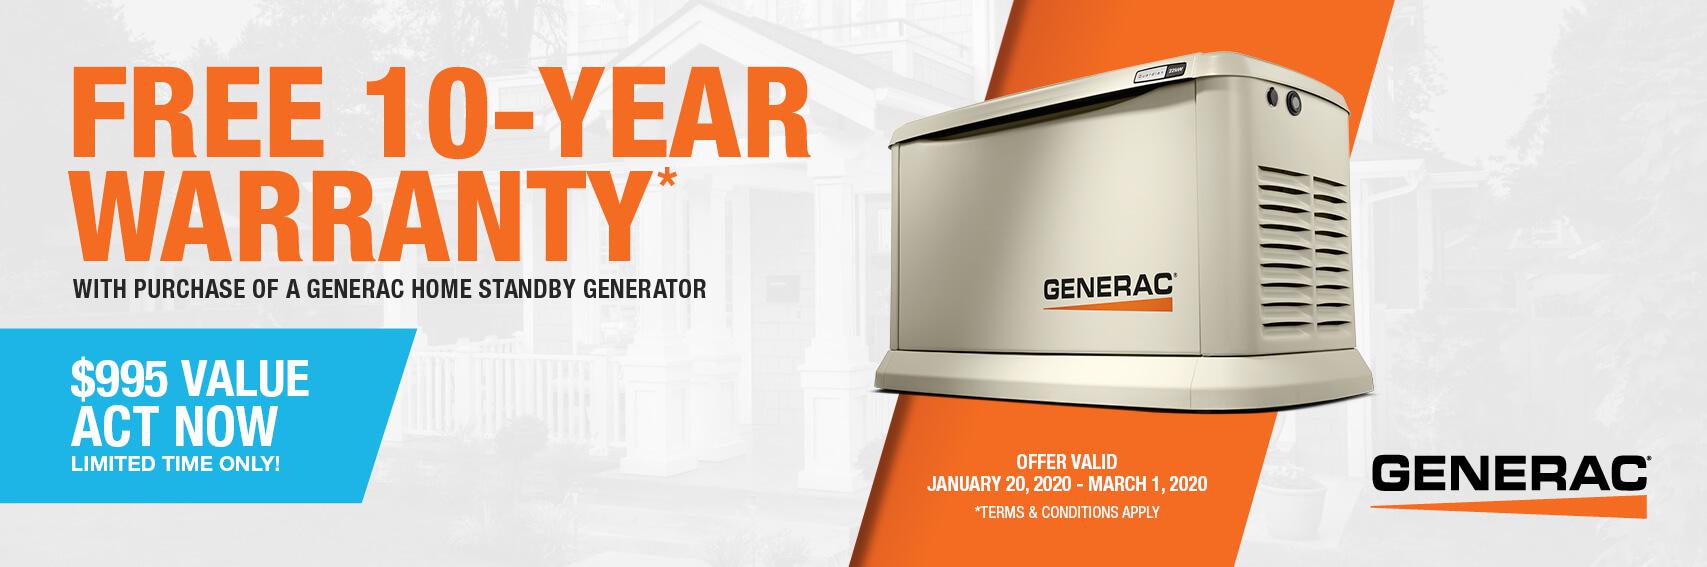 Homestandby Generator Deal | Warranty Offer | Generac Dealer | Farmingdale, NY